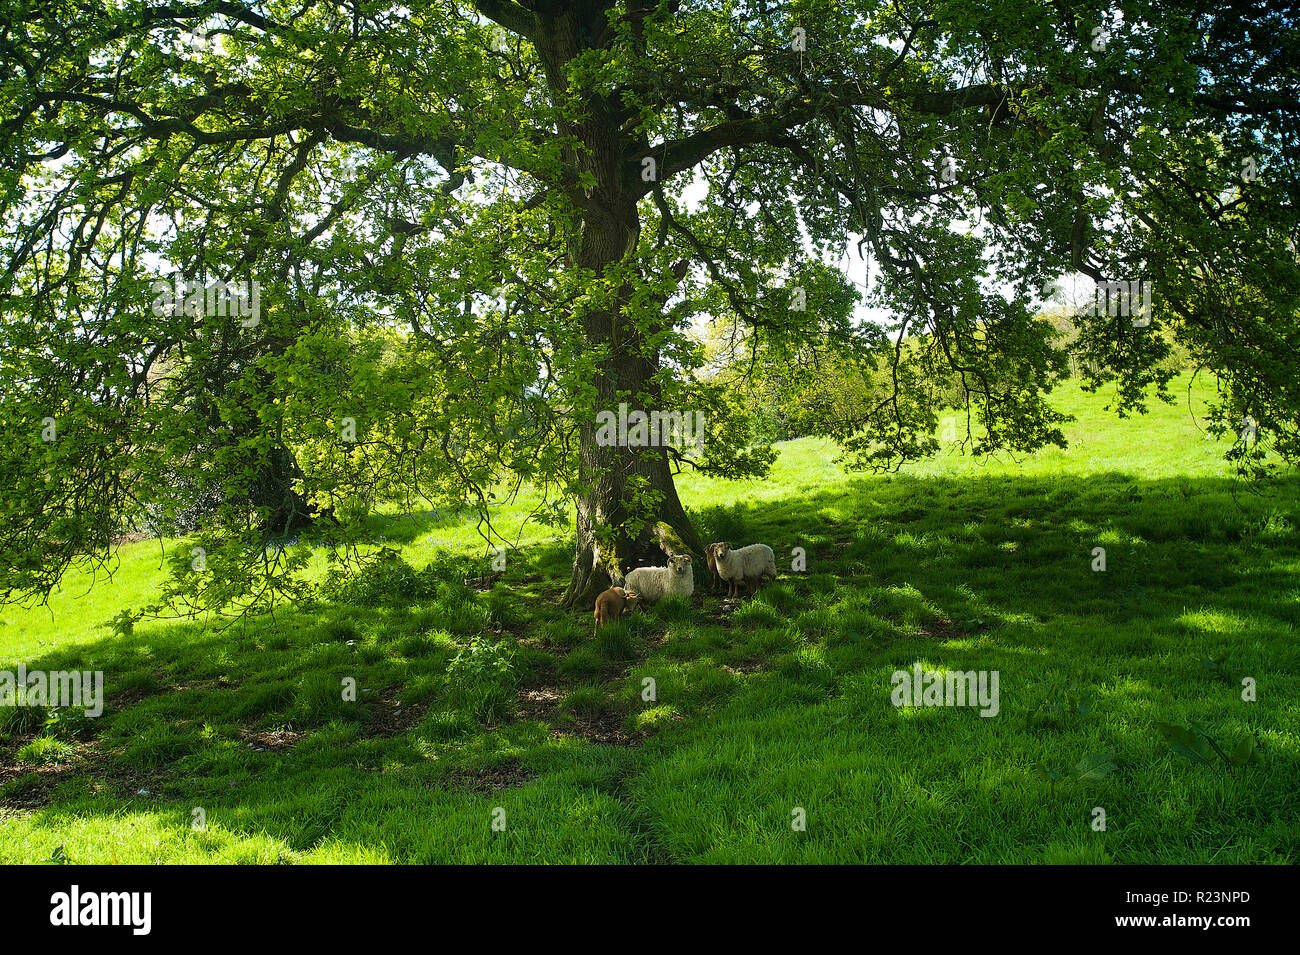 Portland sheep sheltering under an oak tree in Devon, UK. Stock Photo